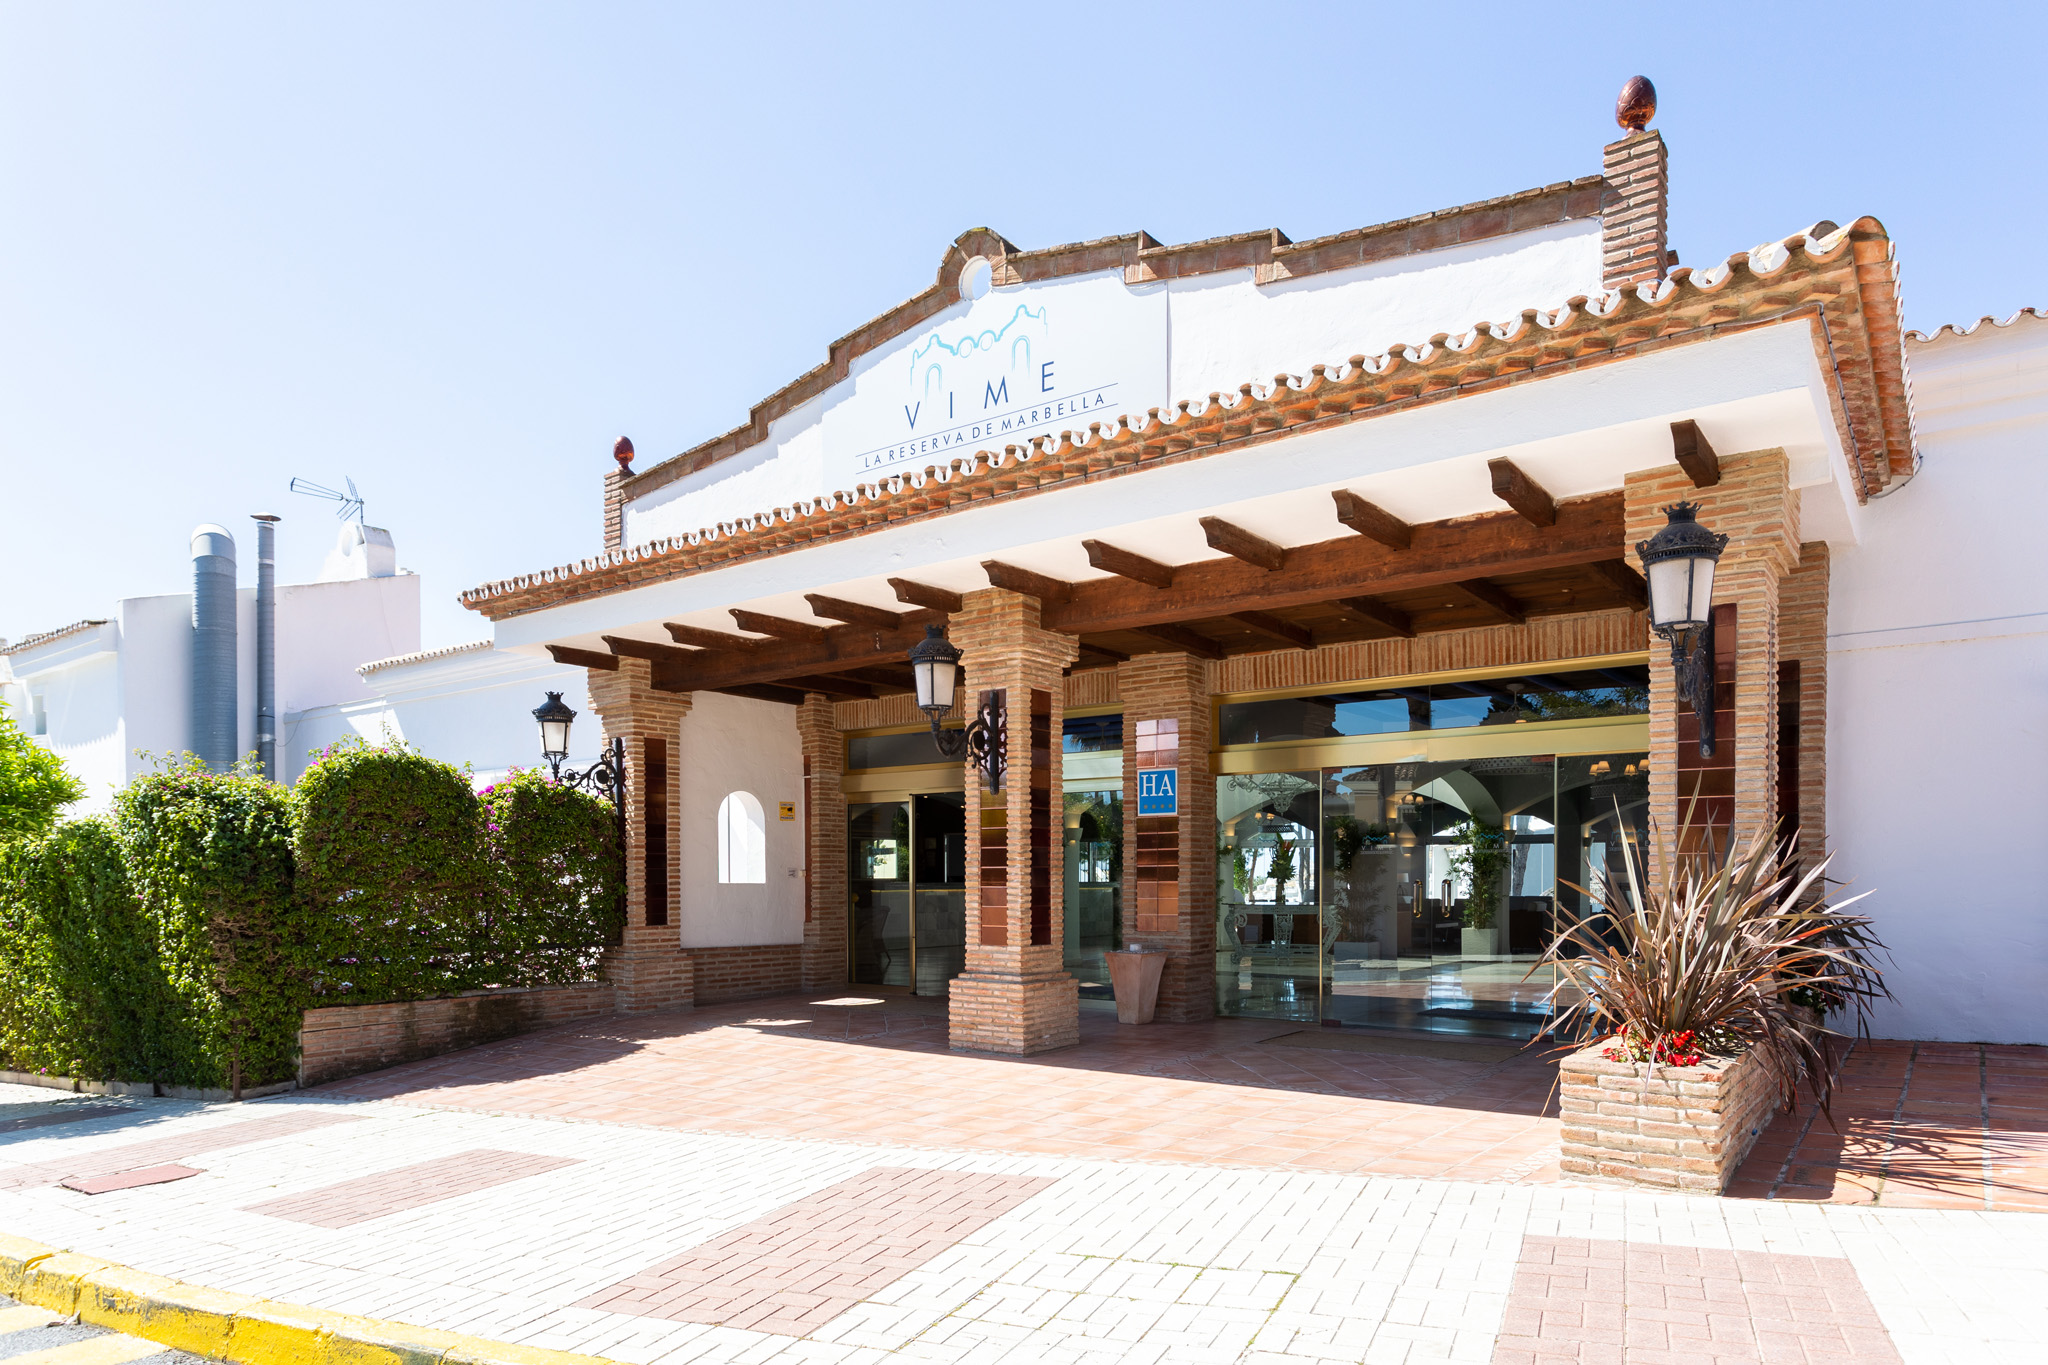 Hotel Vime La Reserva de Marbella | Marbella - Málaga |  - Official website